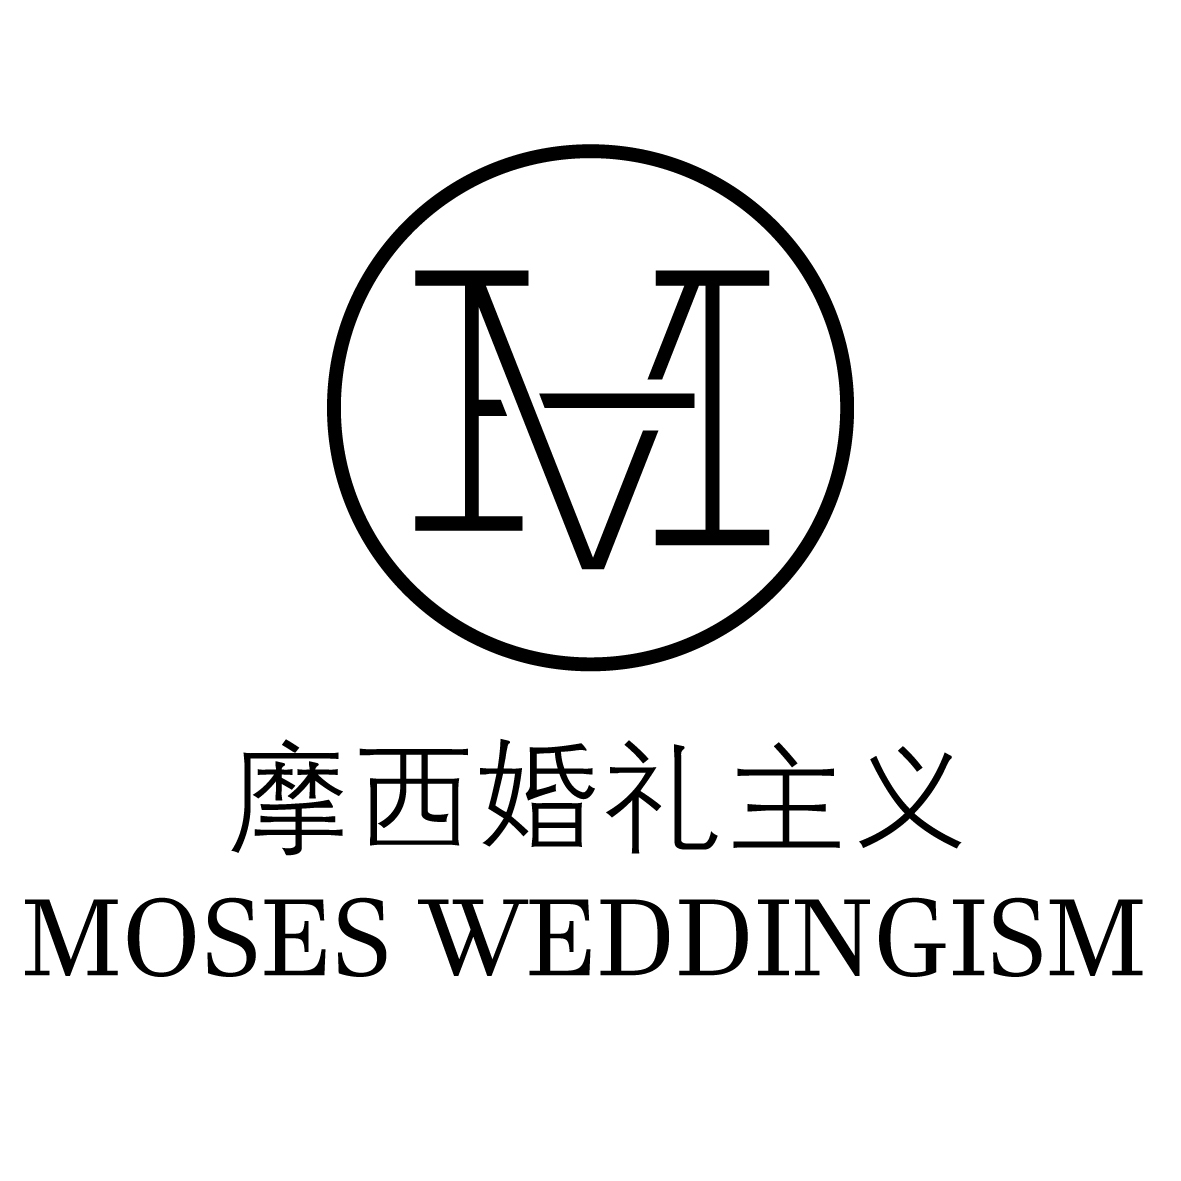 摩西婚礼主义